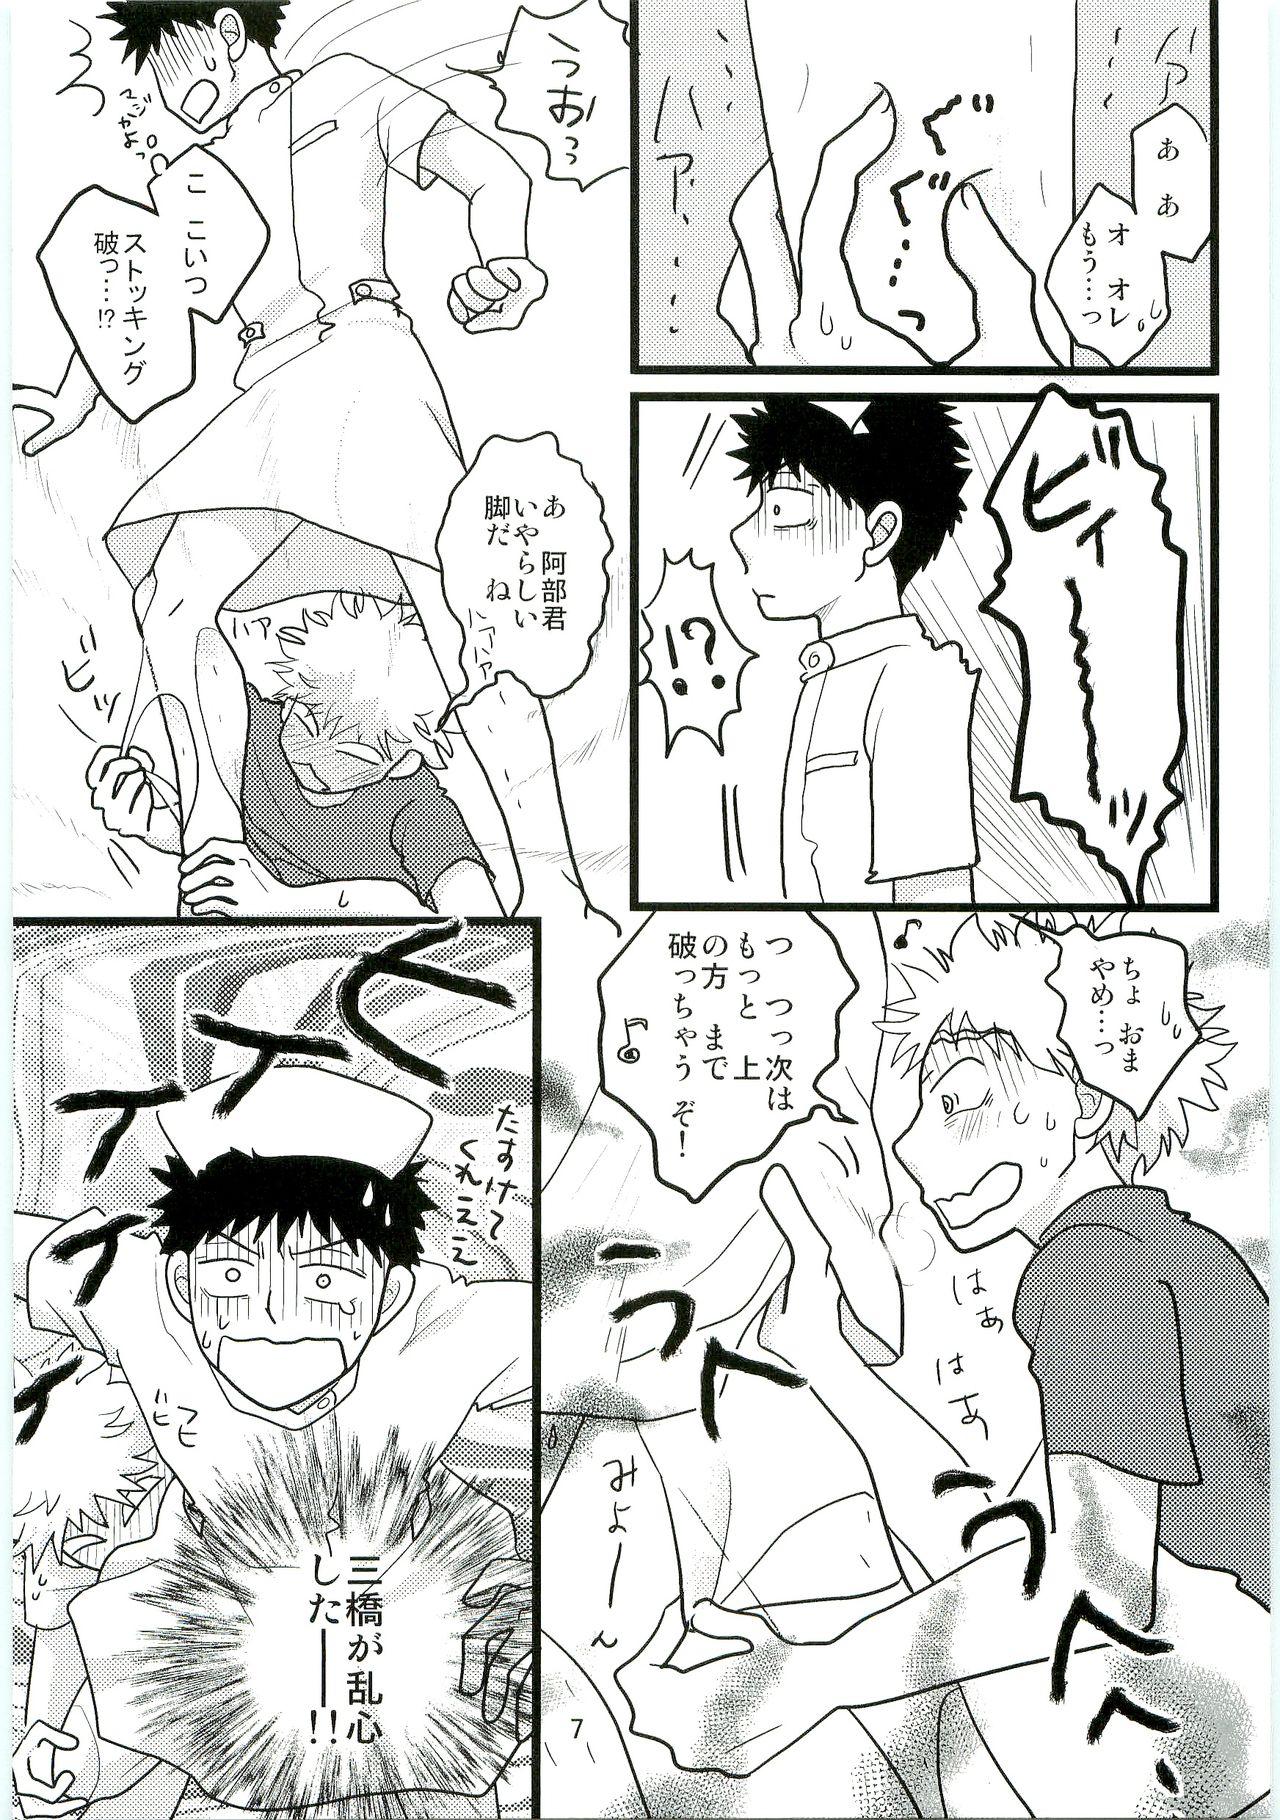 Spanking Kimi no Chuusha wa 1-man Barrel - Ookiku furikabutte Messy - Page 6